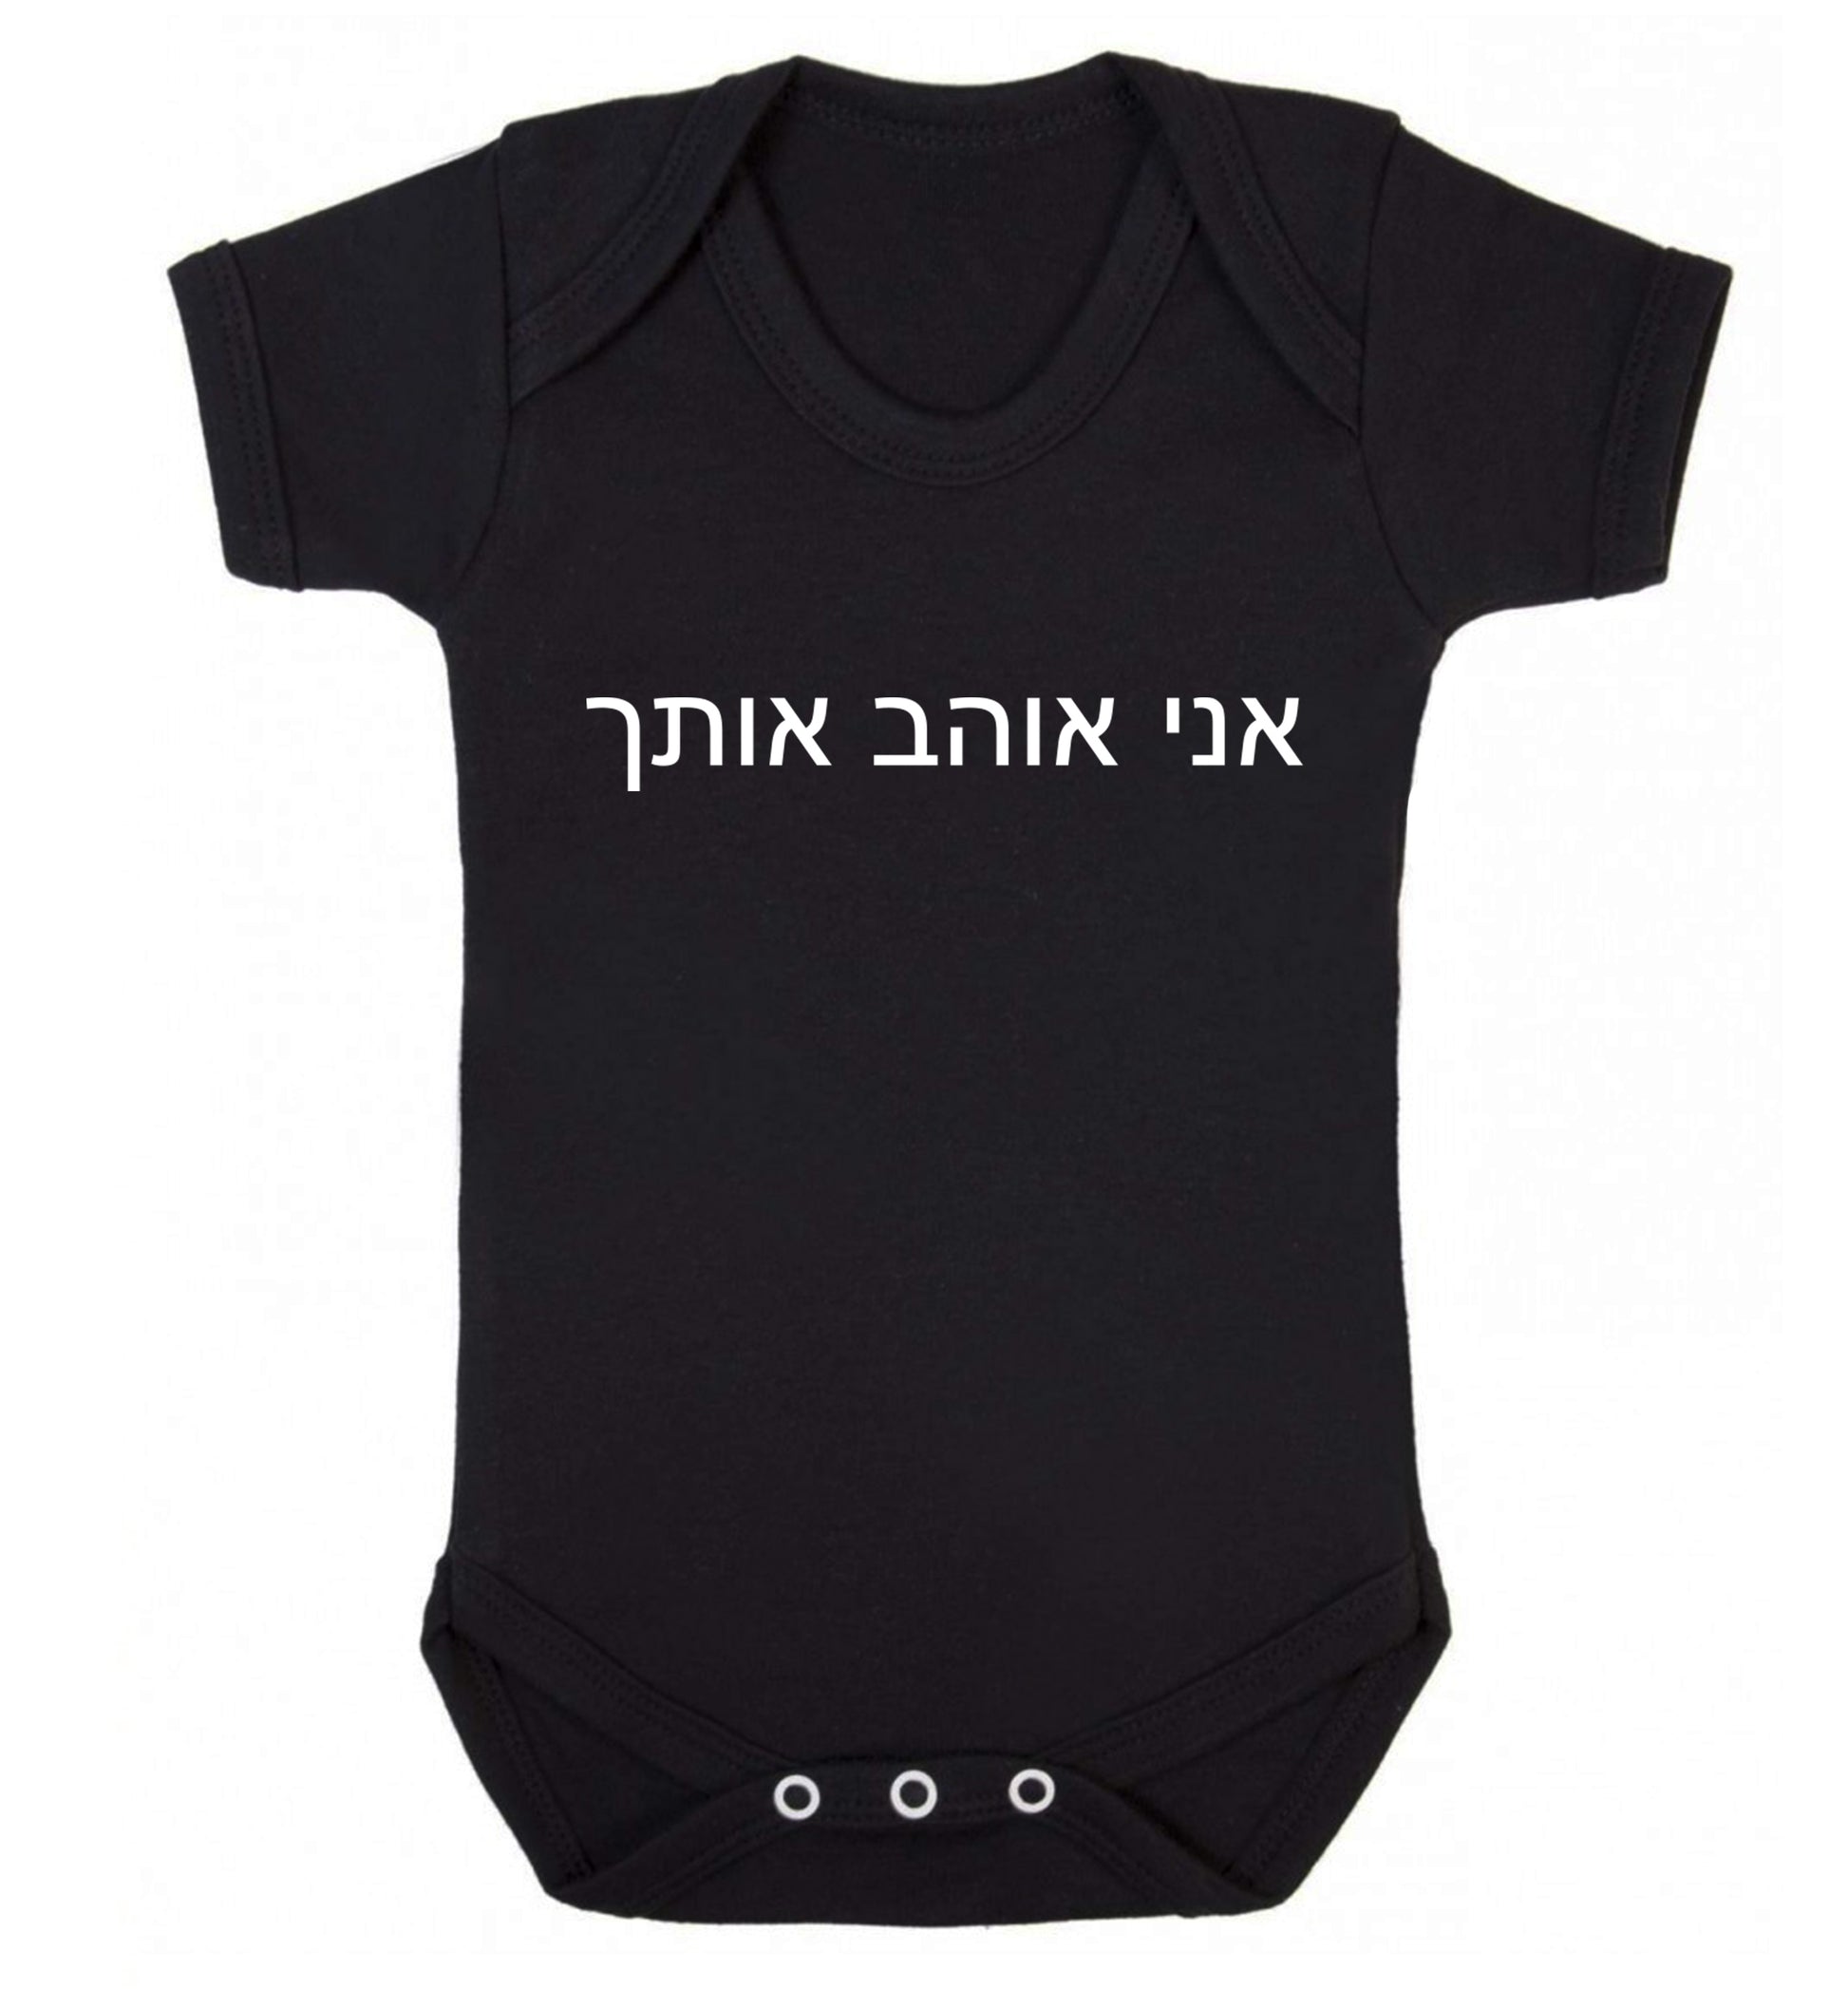 ___ ____ ____ - I love you Baby Vest black 18-24 months